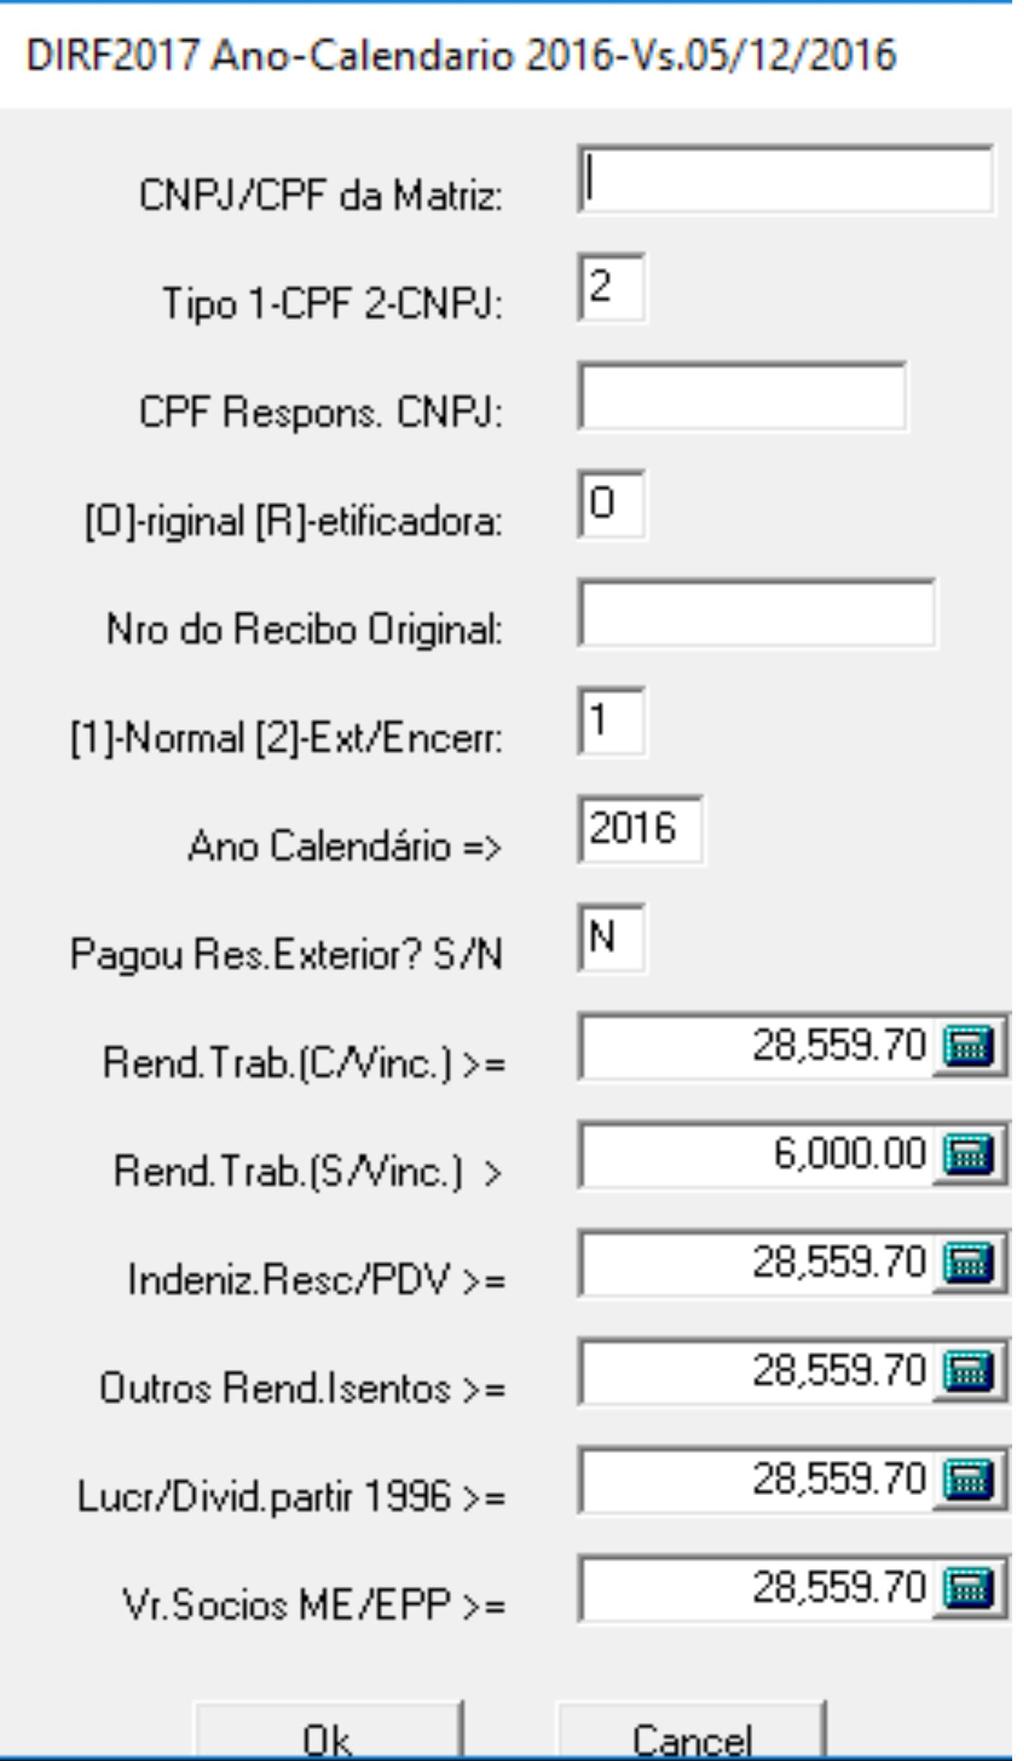 Calendário 2016 => Dirf2017 Na Janela de Exportação: DIRF2017, escolha "Exportar" ou então Visualizar, para ver os dados gerados para